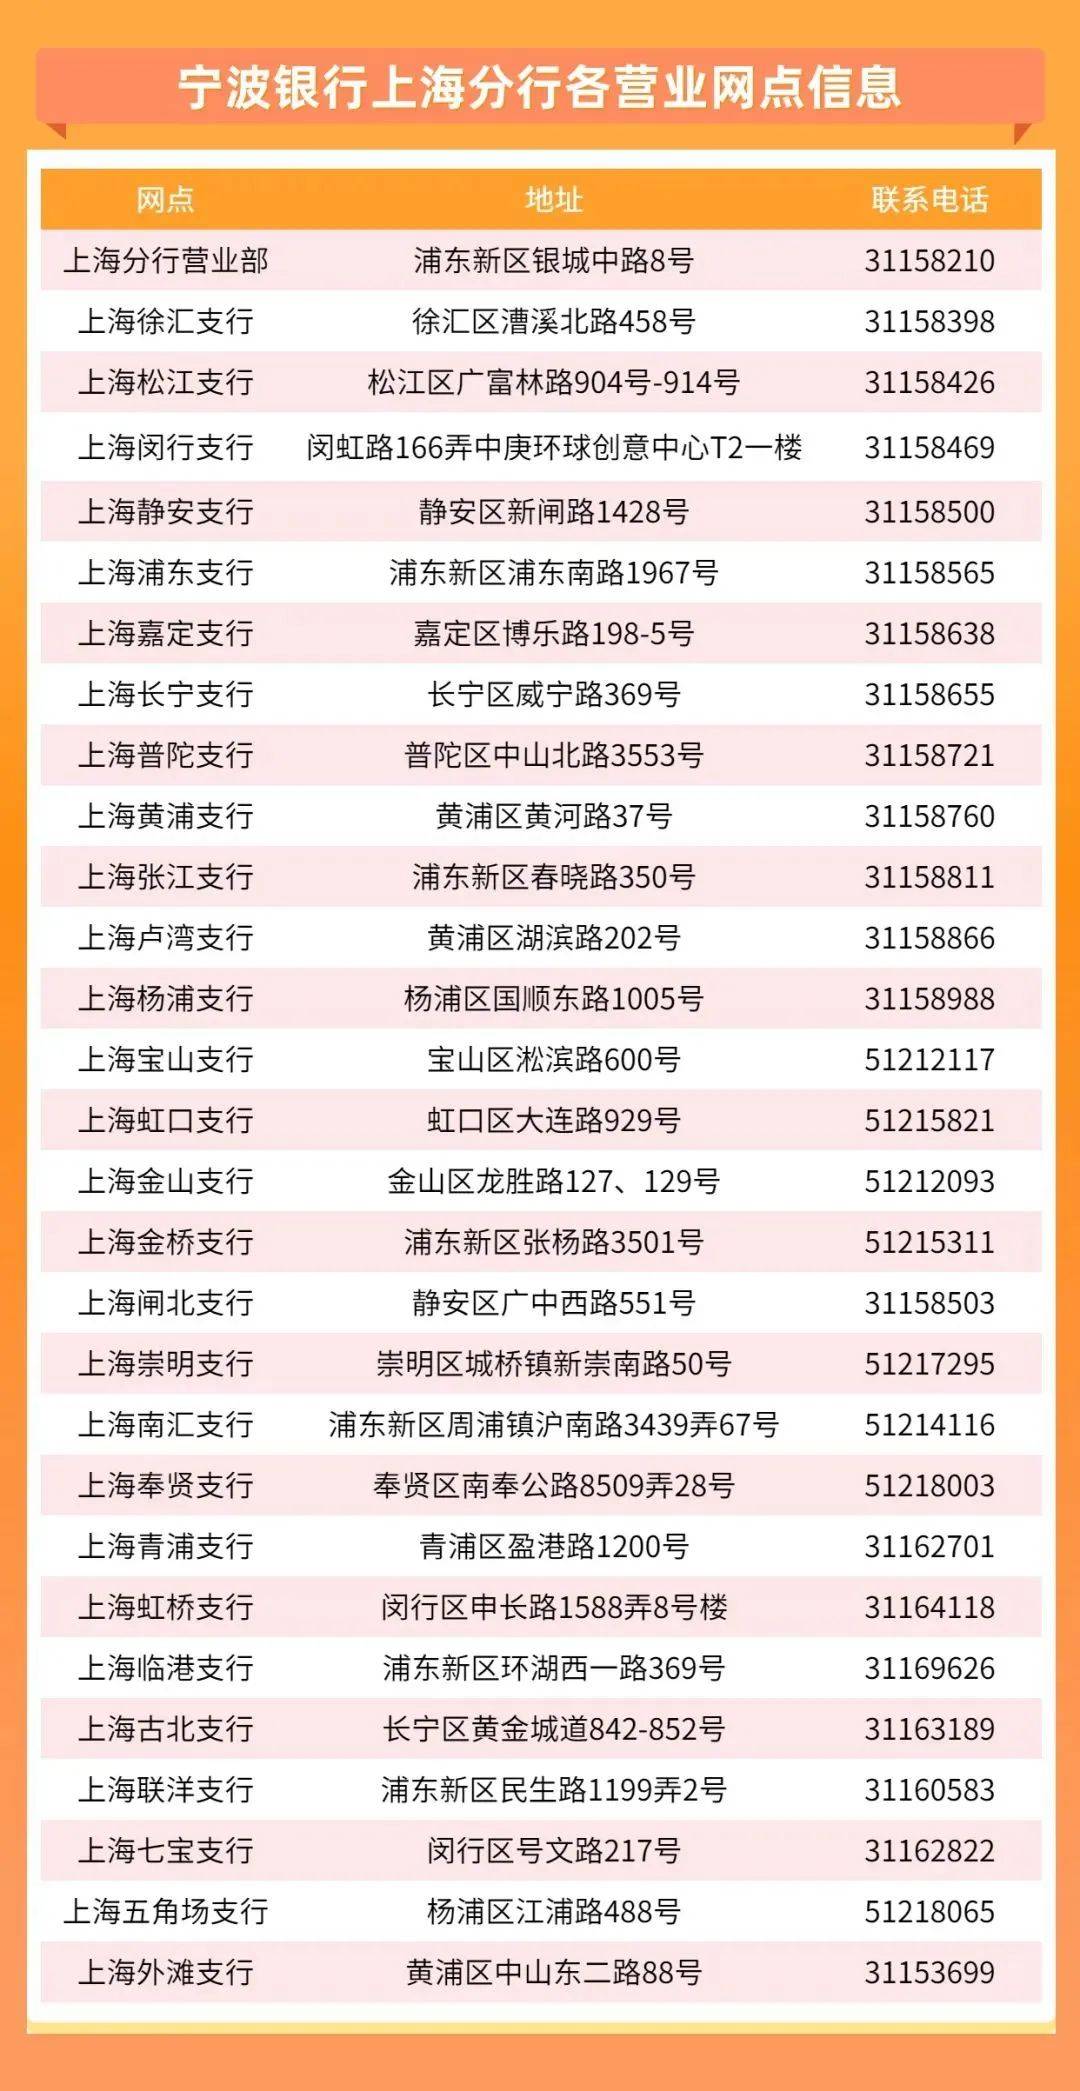 【招聘四】宁波银行上海分行2025届暑期实习生招聘正式启动!